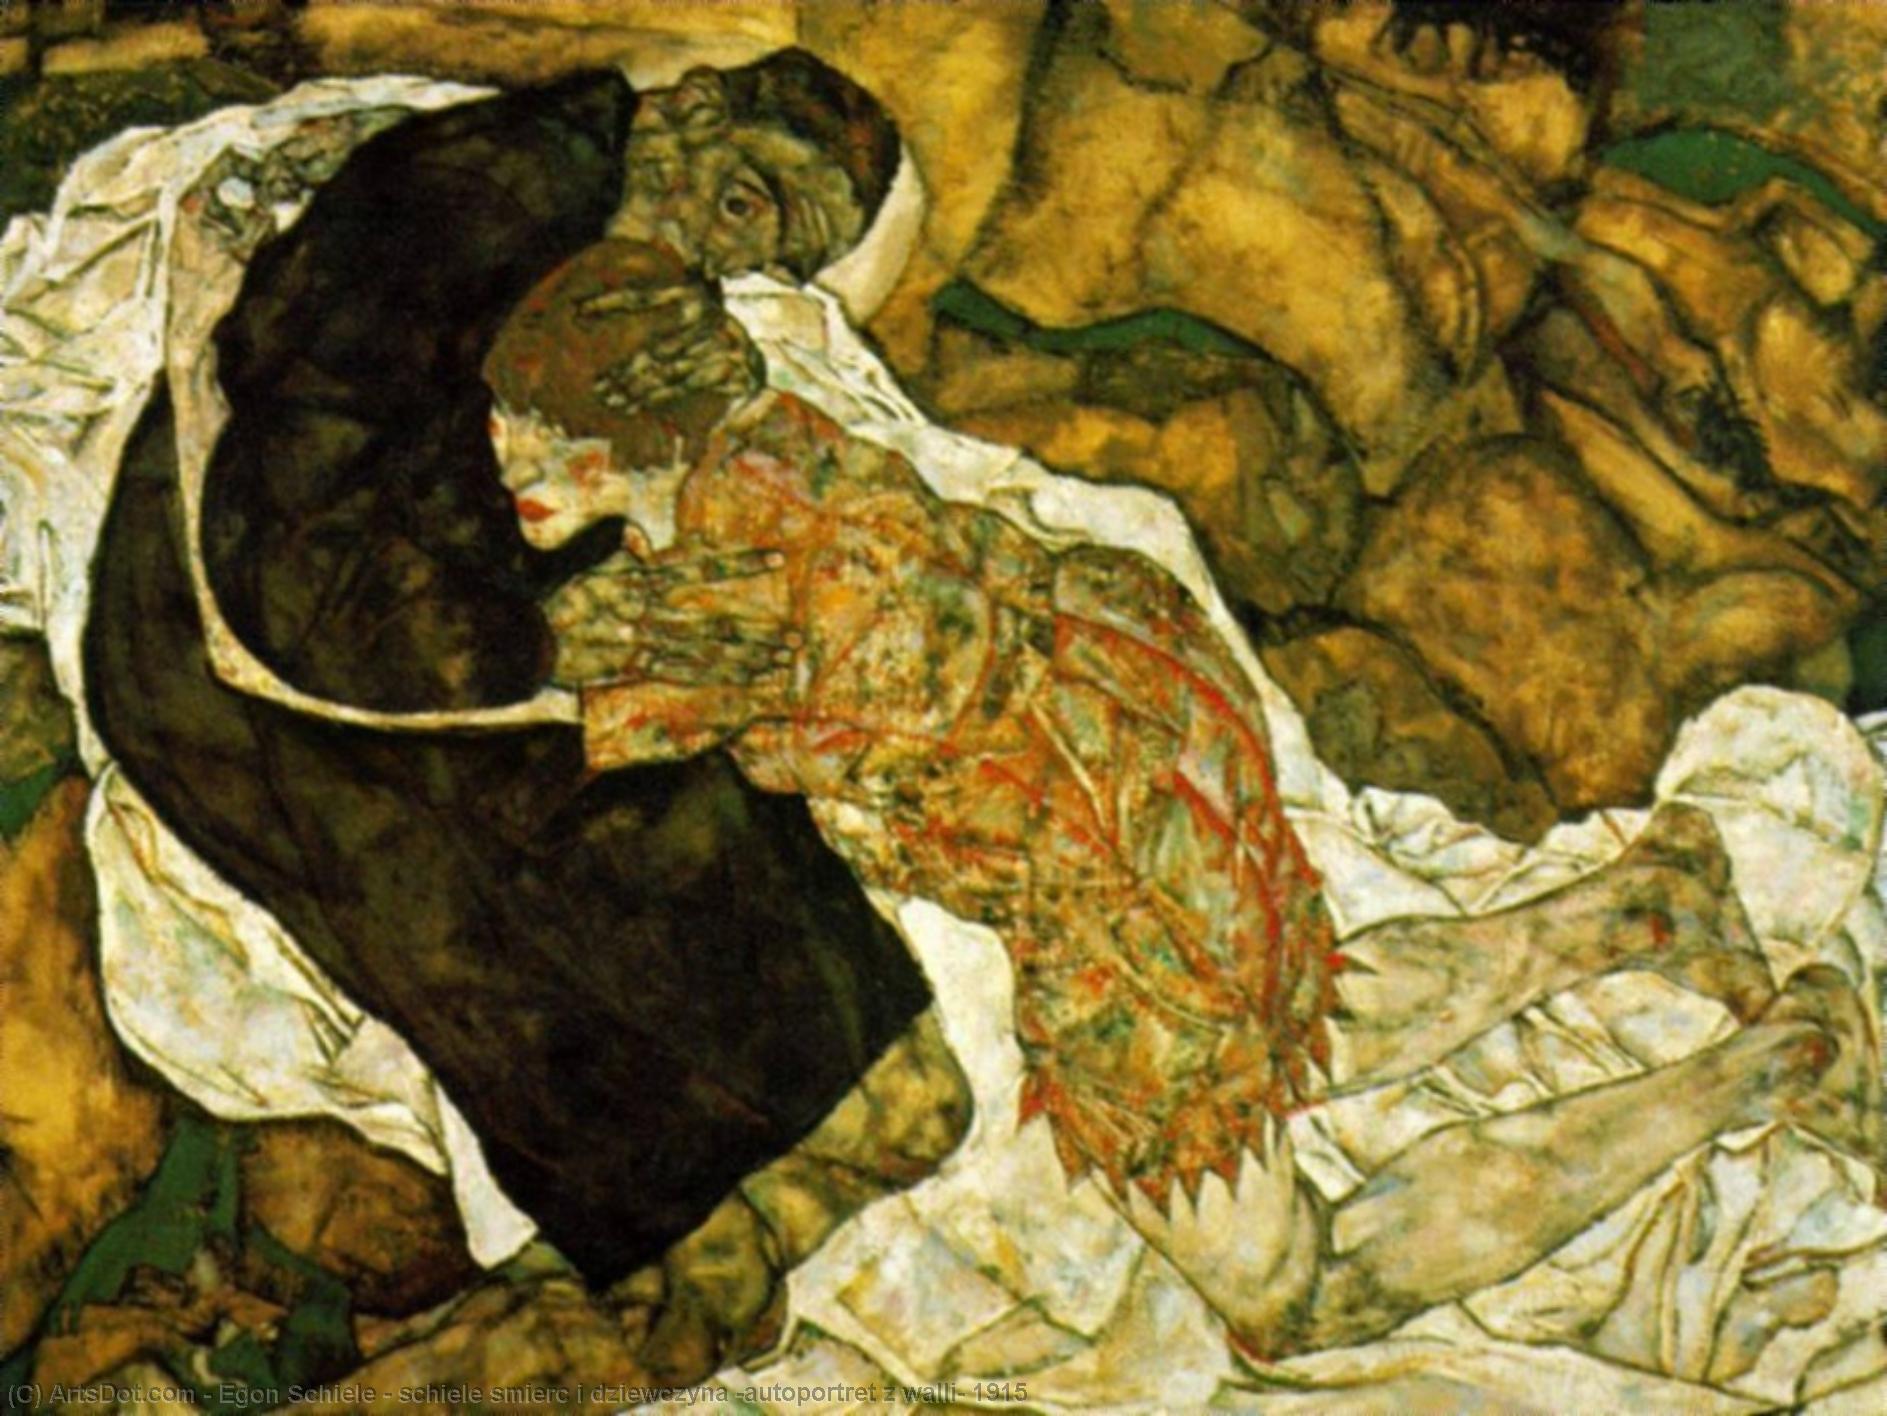 WikiOO.org - Enciclopédia das Belas Artes - Pintura, Arte por Egon Schiele - schiele smierc i dziewczyna (autoportret z walli) 1915